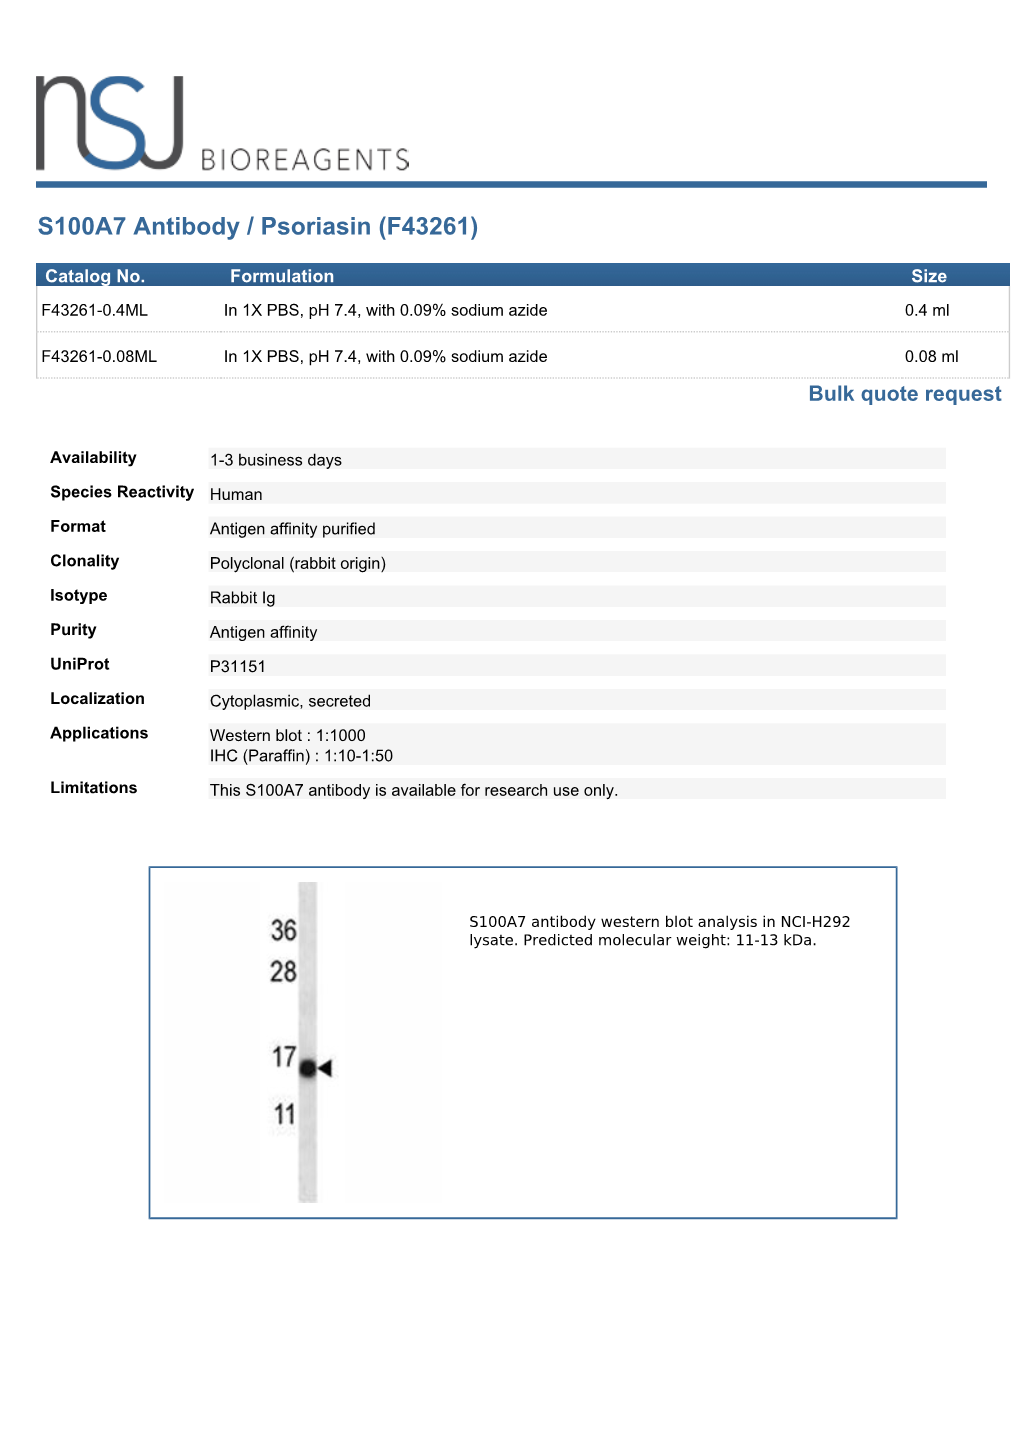 S100A7 Antibody / Psoriasin (F43261)